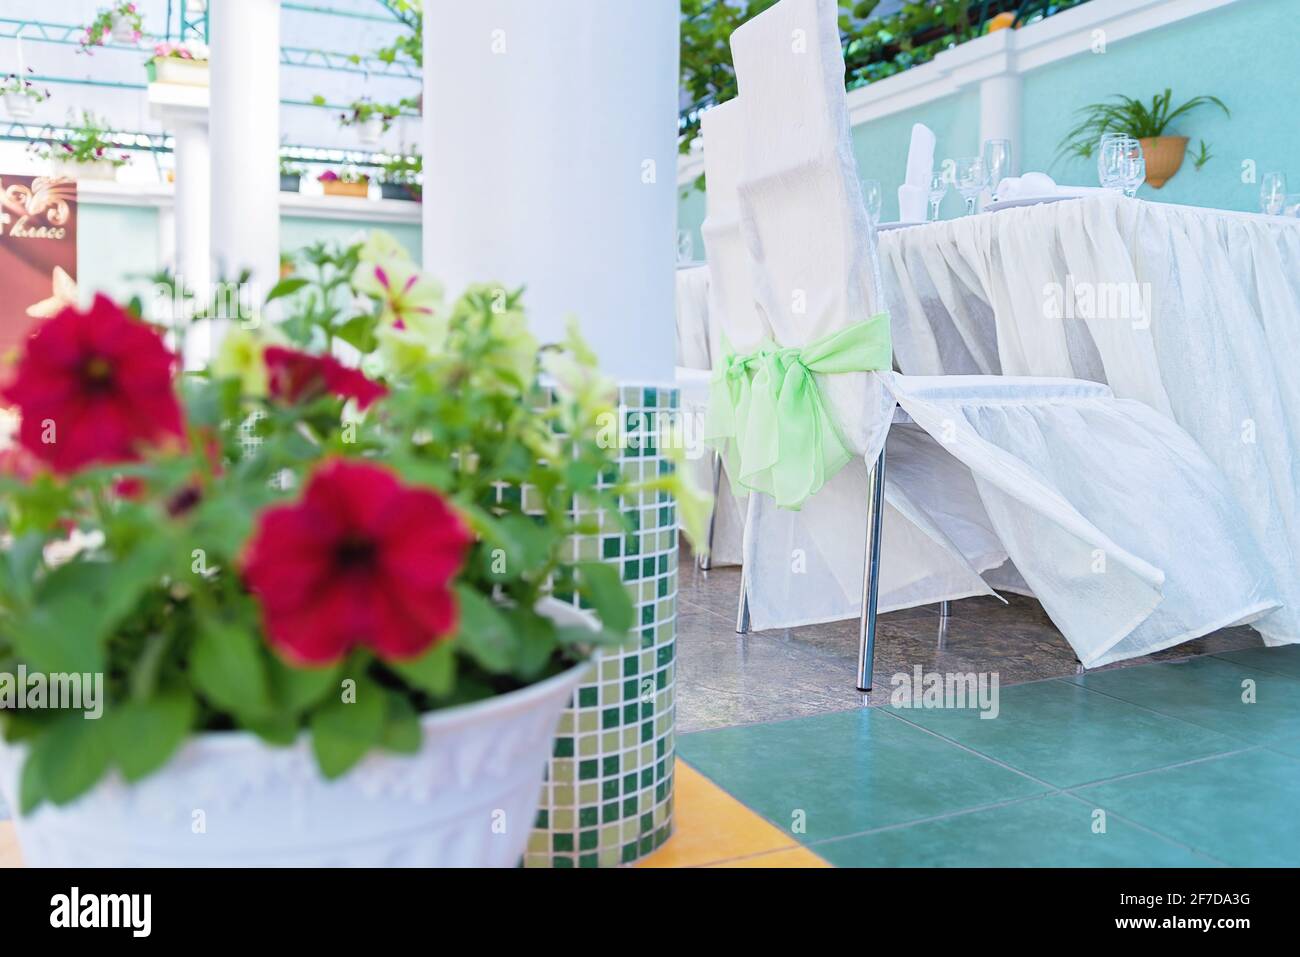 Decorazioni per matrimoni in un ristorante sul tavolo. Sala banchetti ed elementi decorativi in colori d'amore per il matrimonio Foto Stock